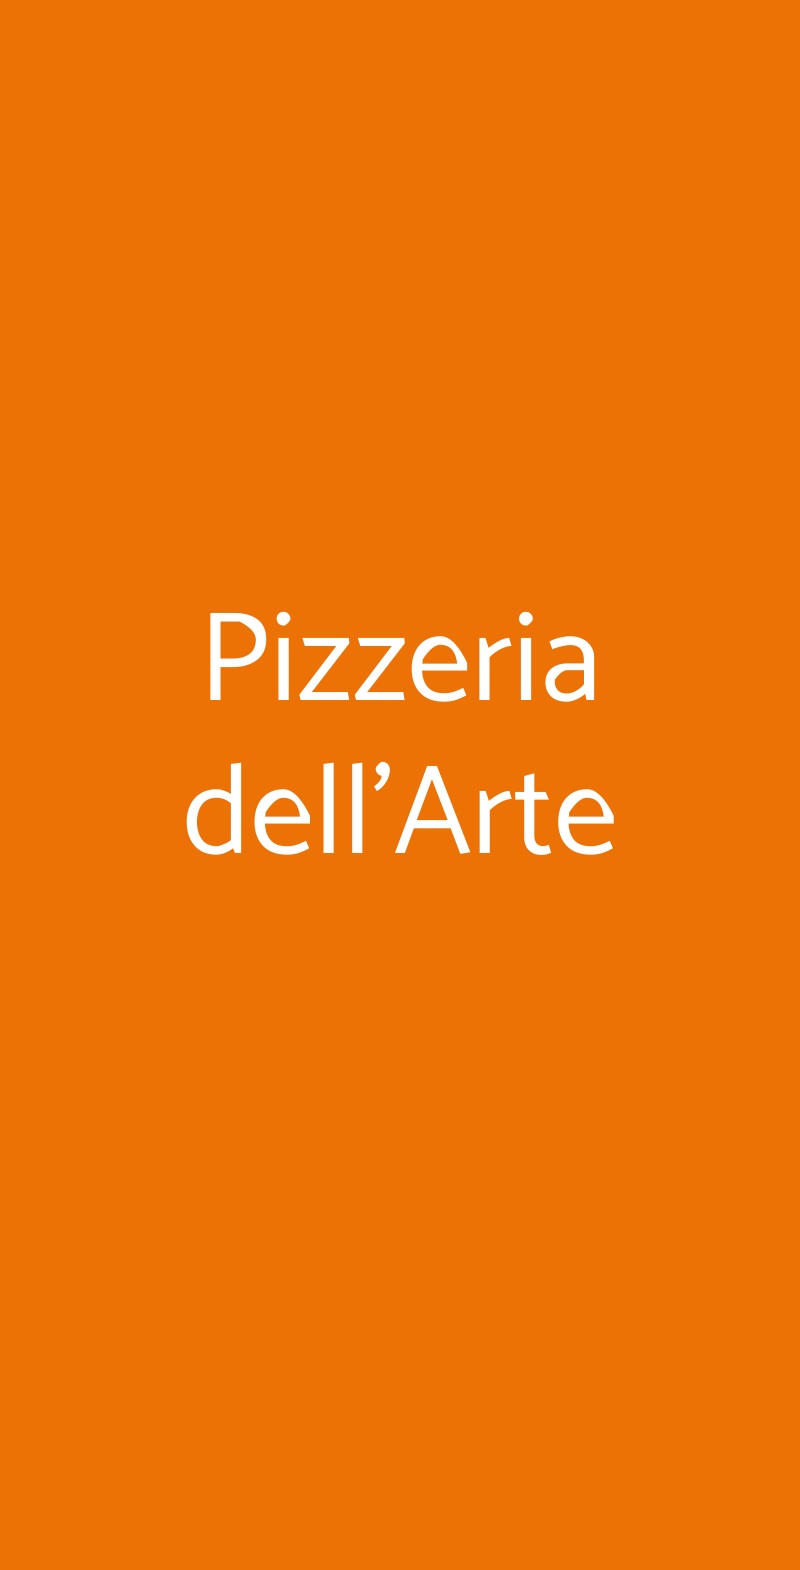 Pizzeria dell'Arte Milano menù 1 pagina